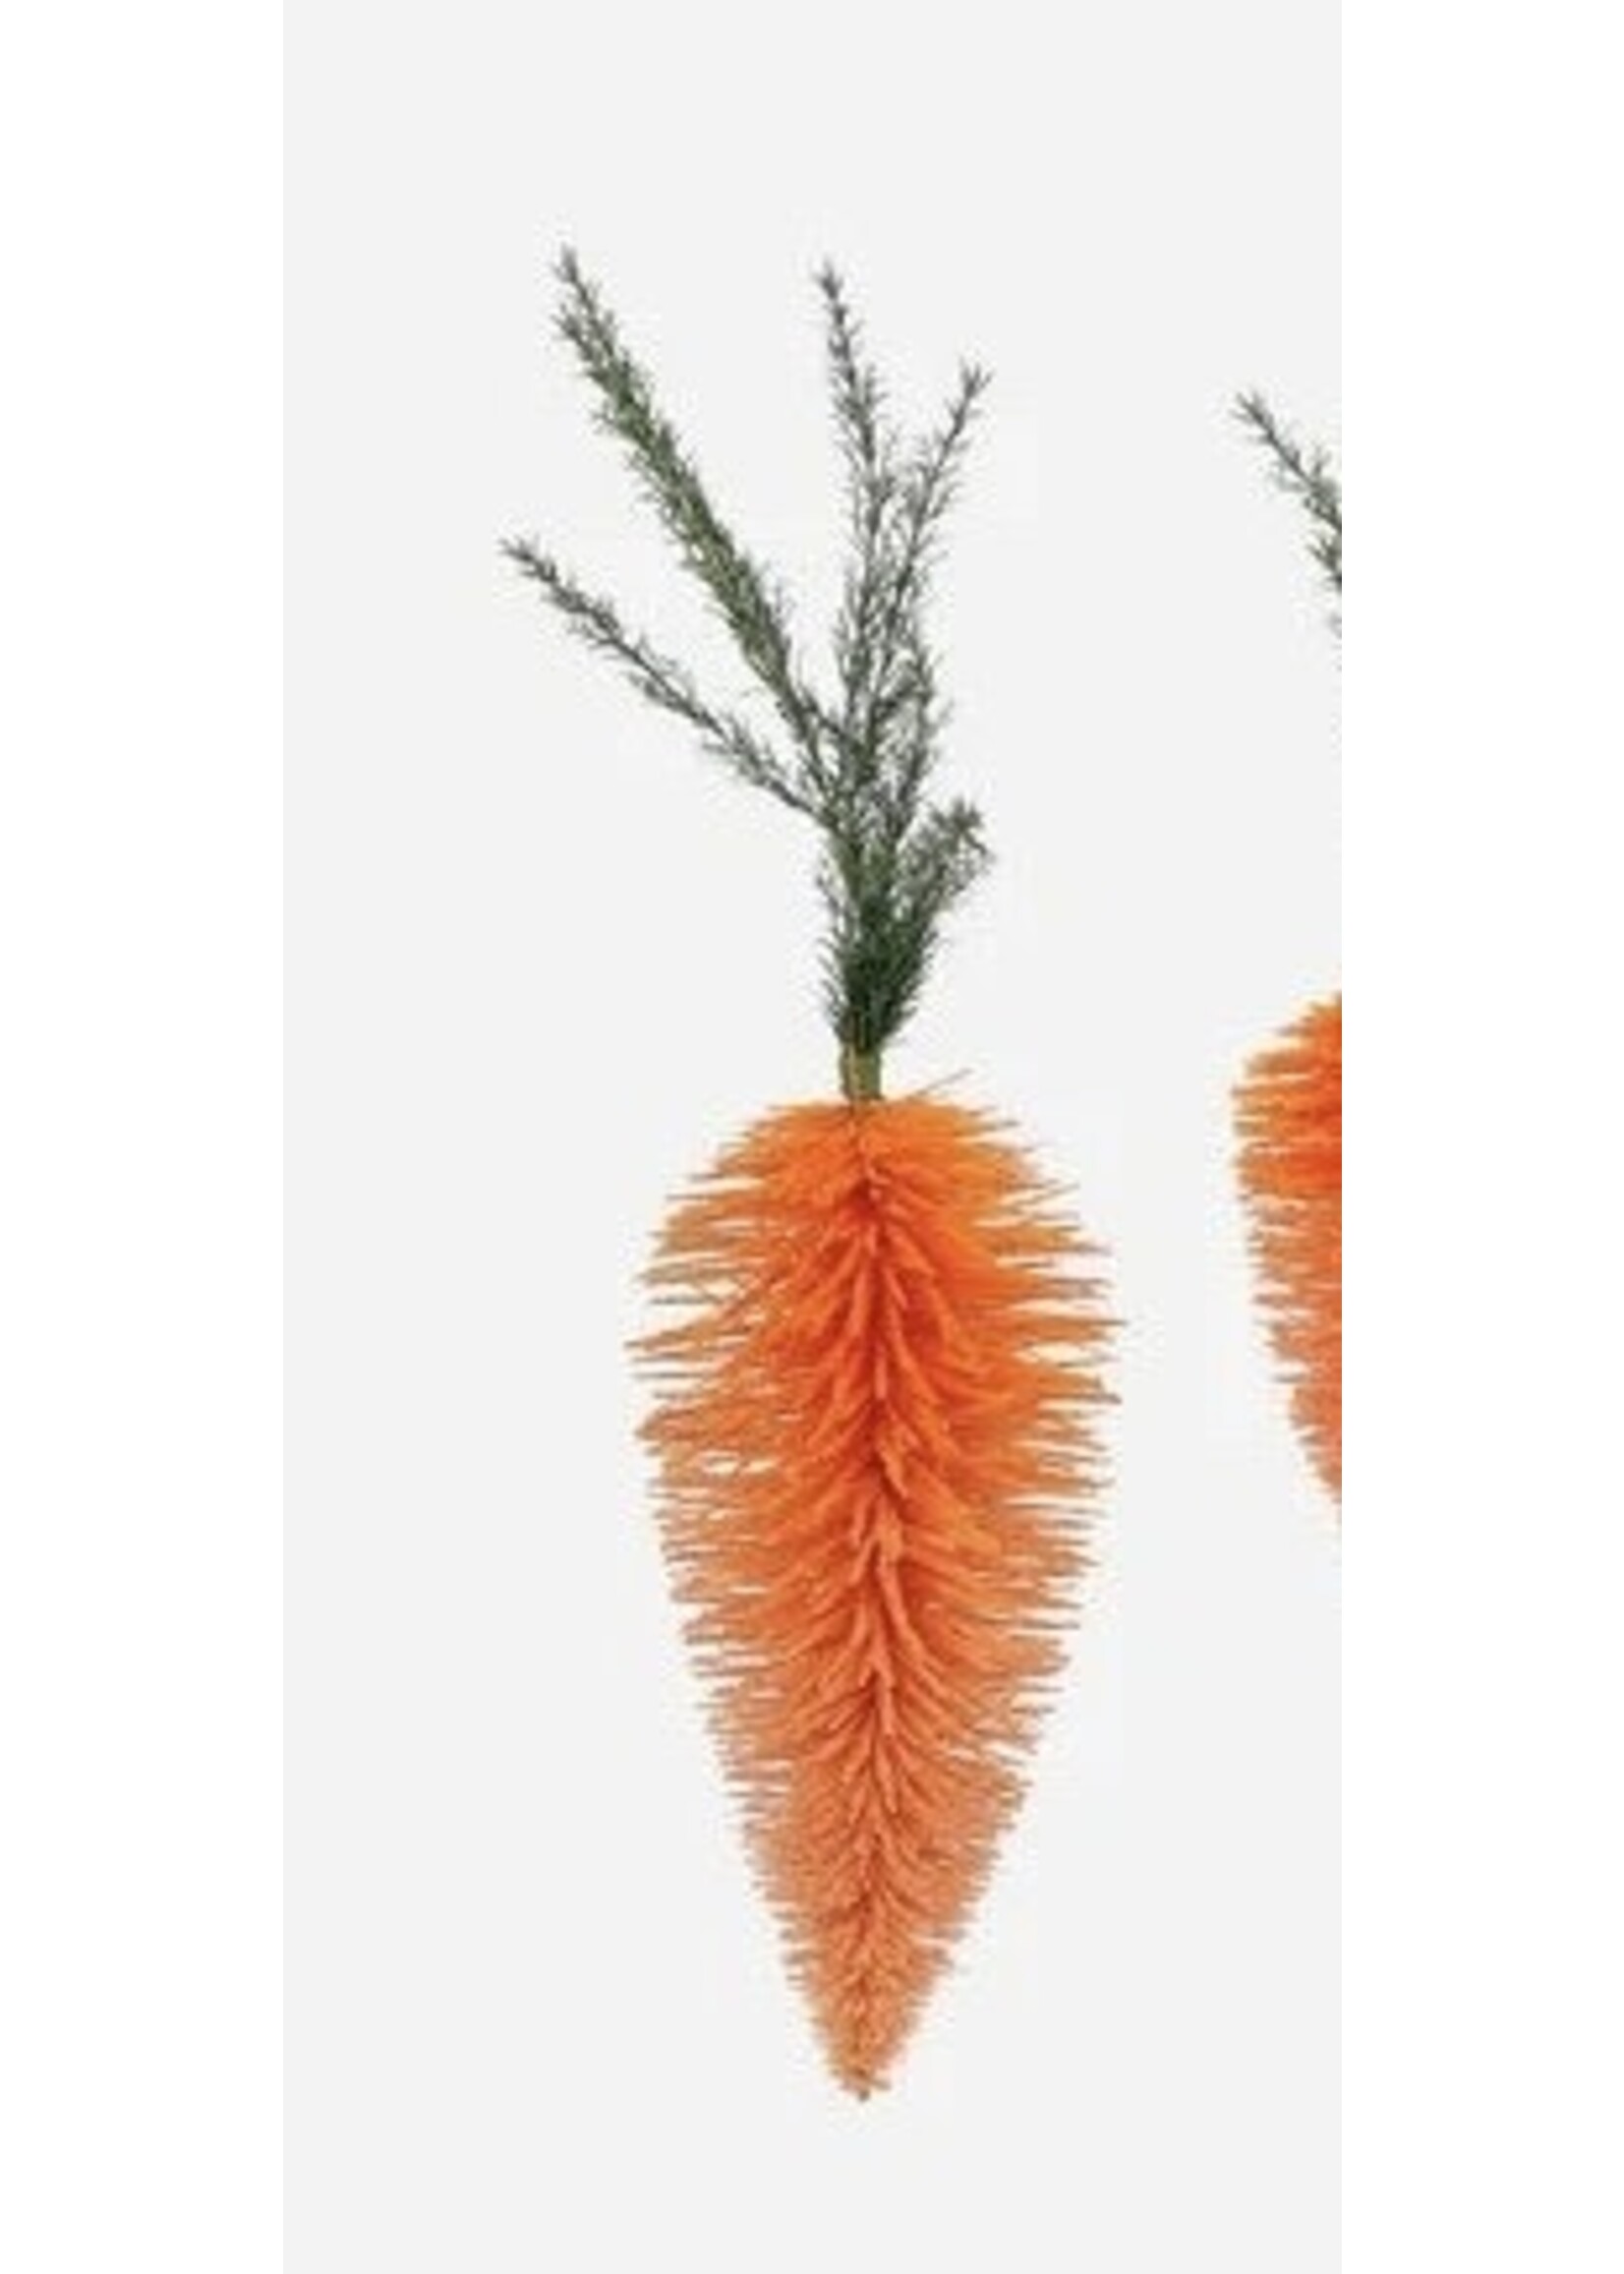 ONE HUNDRED 80 DEGREES Hanging Carrot 35"